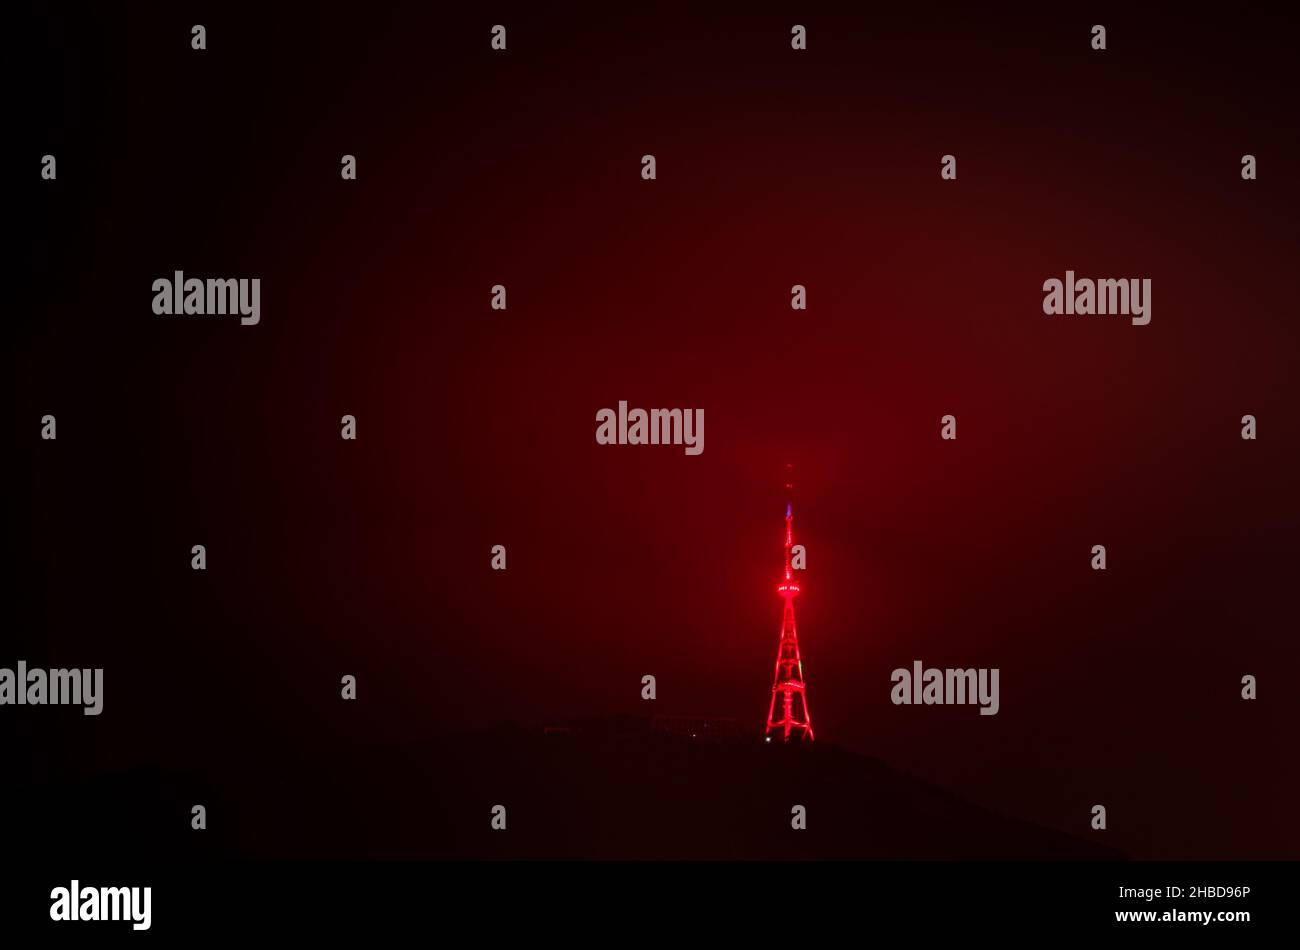 Torre della televisione rossa Illiuminata e funicolare sulla collina a Tbilisi, Georgia. Immagine spazio vuoto di sfondo. 22.03.2020 Foto Stock